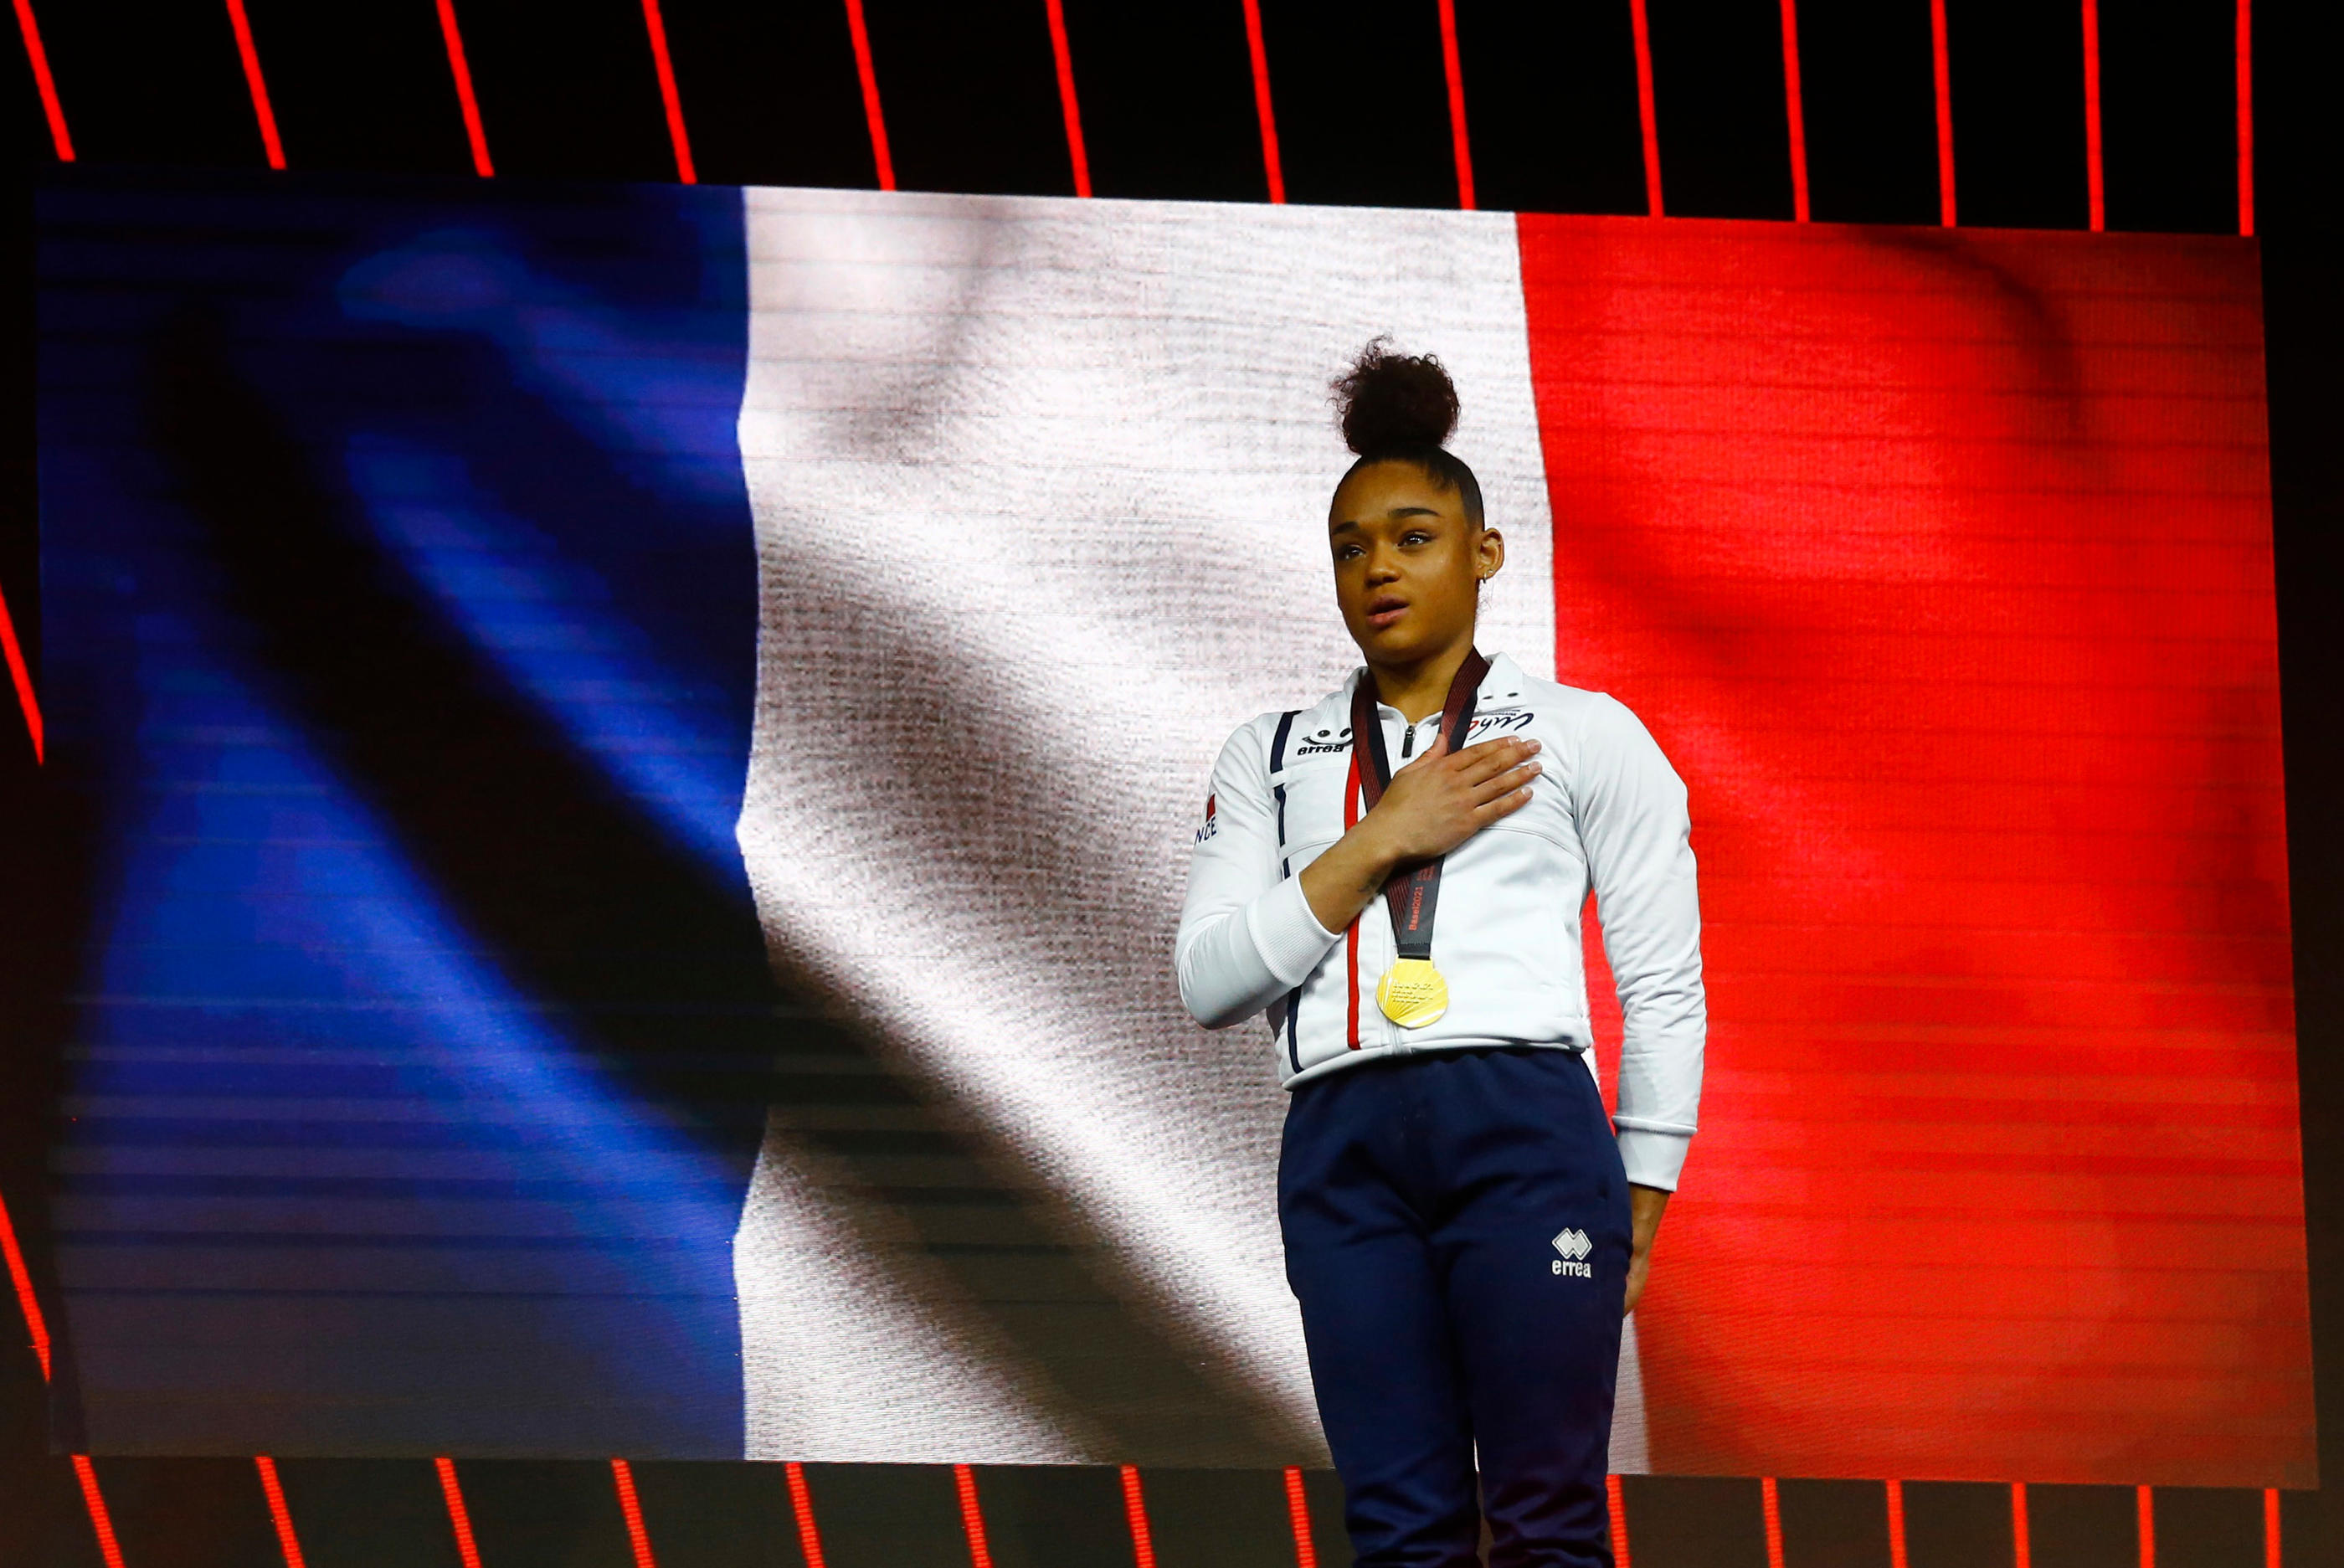 La gymnaste française, Mélanie de Jesus dos Santos, sacrée championne d'Europe en 2021, quitte la France pour s'entraîner aux Etats-Unis. REUTERS/Arnd Wiegmann